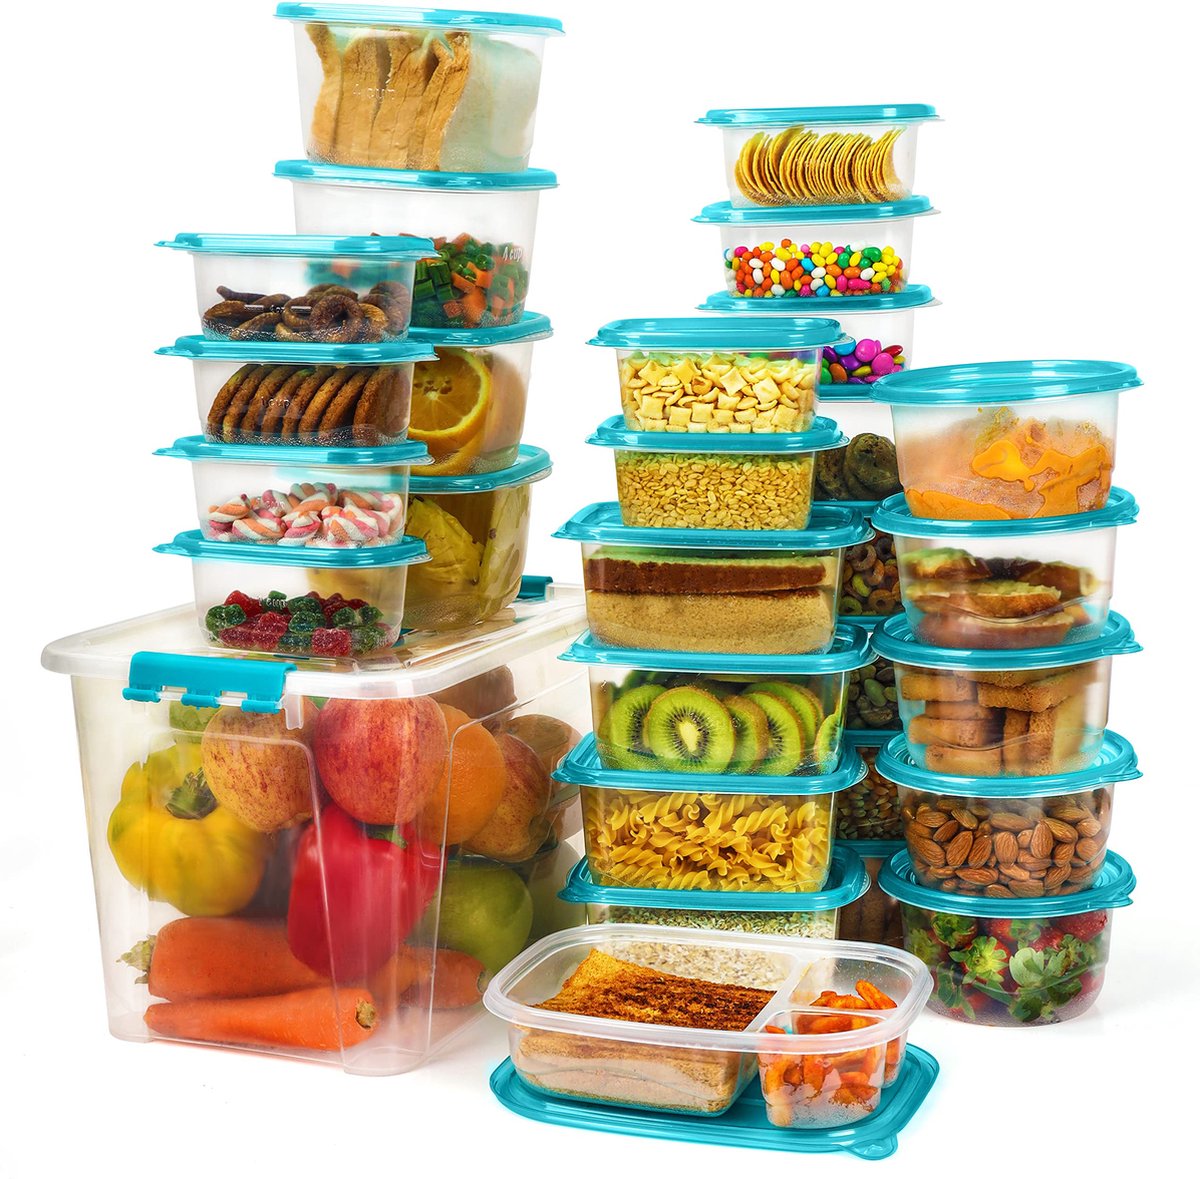 Freshly Contained 33 Stuks Plastic Voedsel Containers - BPA-vrije Herbruikbare Opslag Dozen Set met Deksels - Luchtdichte Containers voor Keuken, Kelder, Mealprep en Lunches - Magnetron/Diepvries